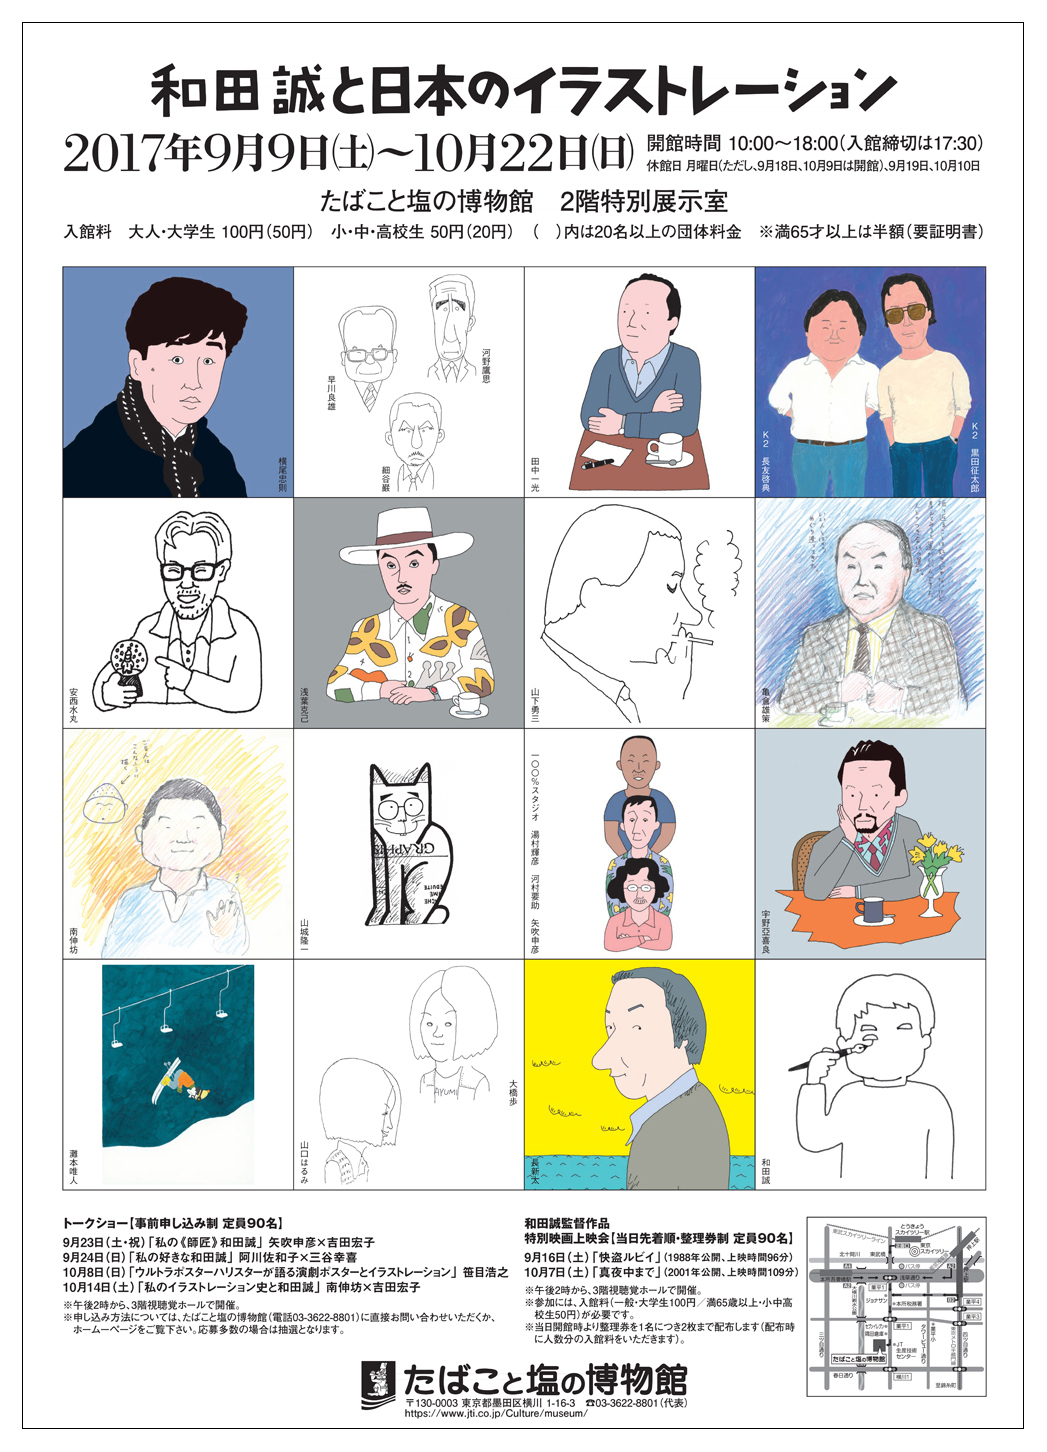 『和田誠と日本のイラストレーション』矢吹申彦がデザインした本展覧会のポスター。イラストレーターたちの似顔絵は和田によるもの。